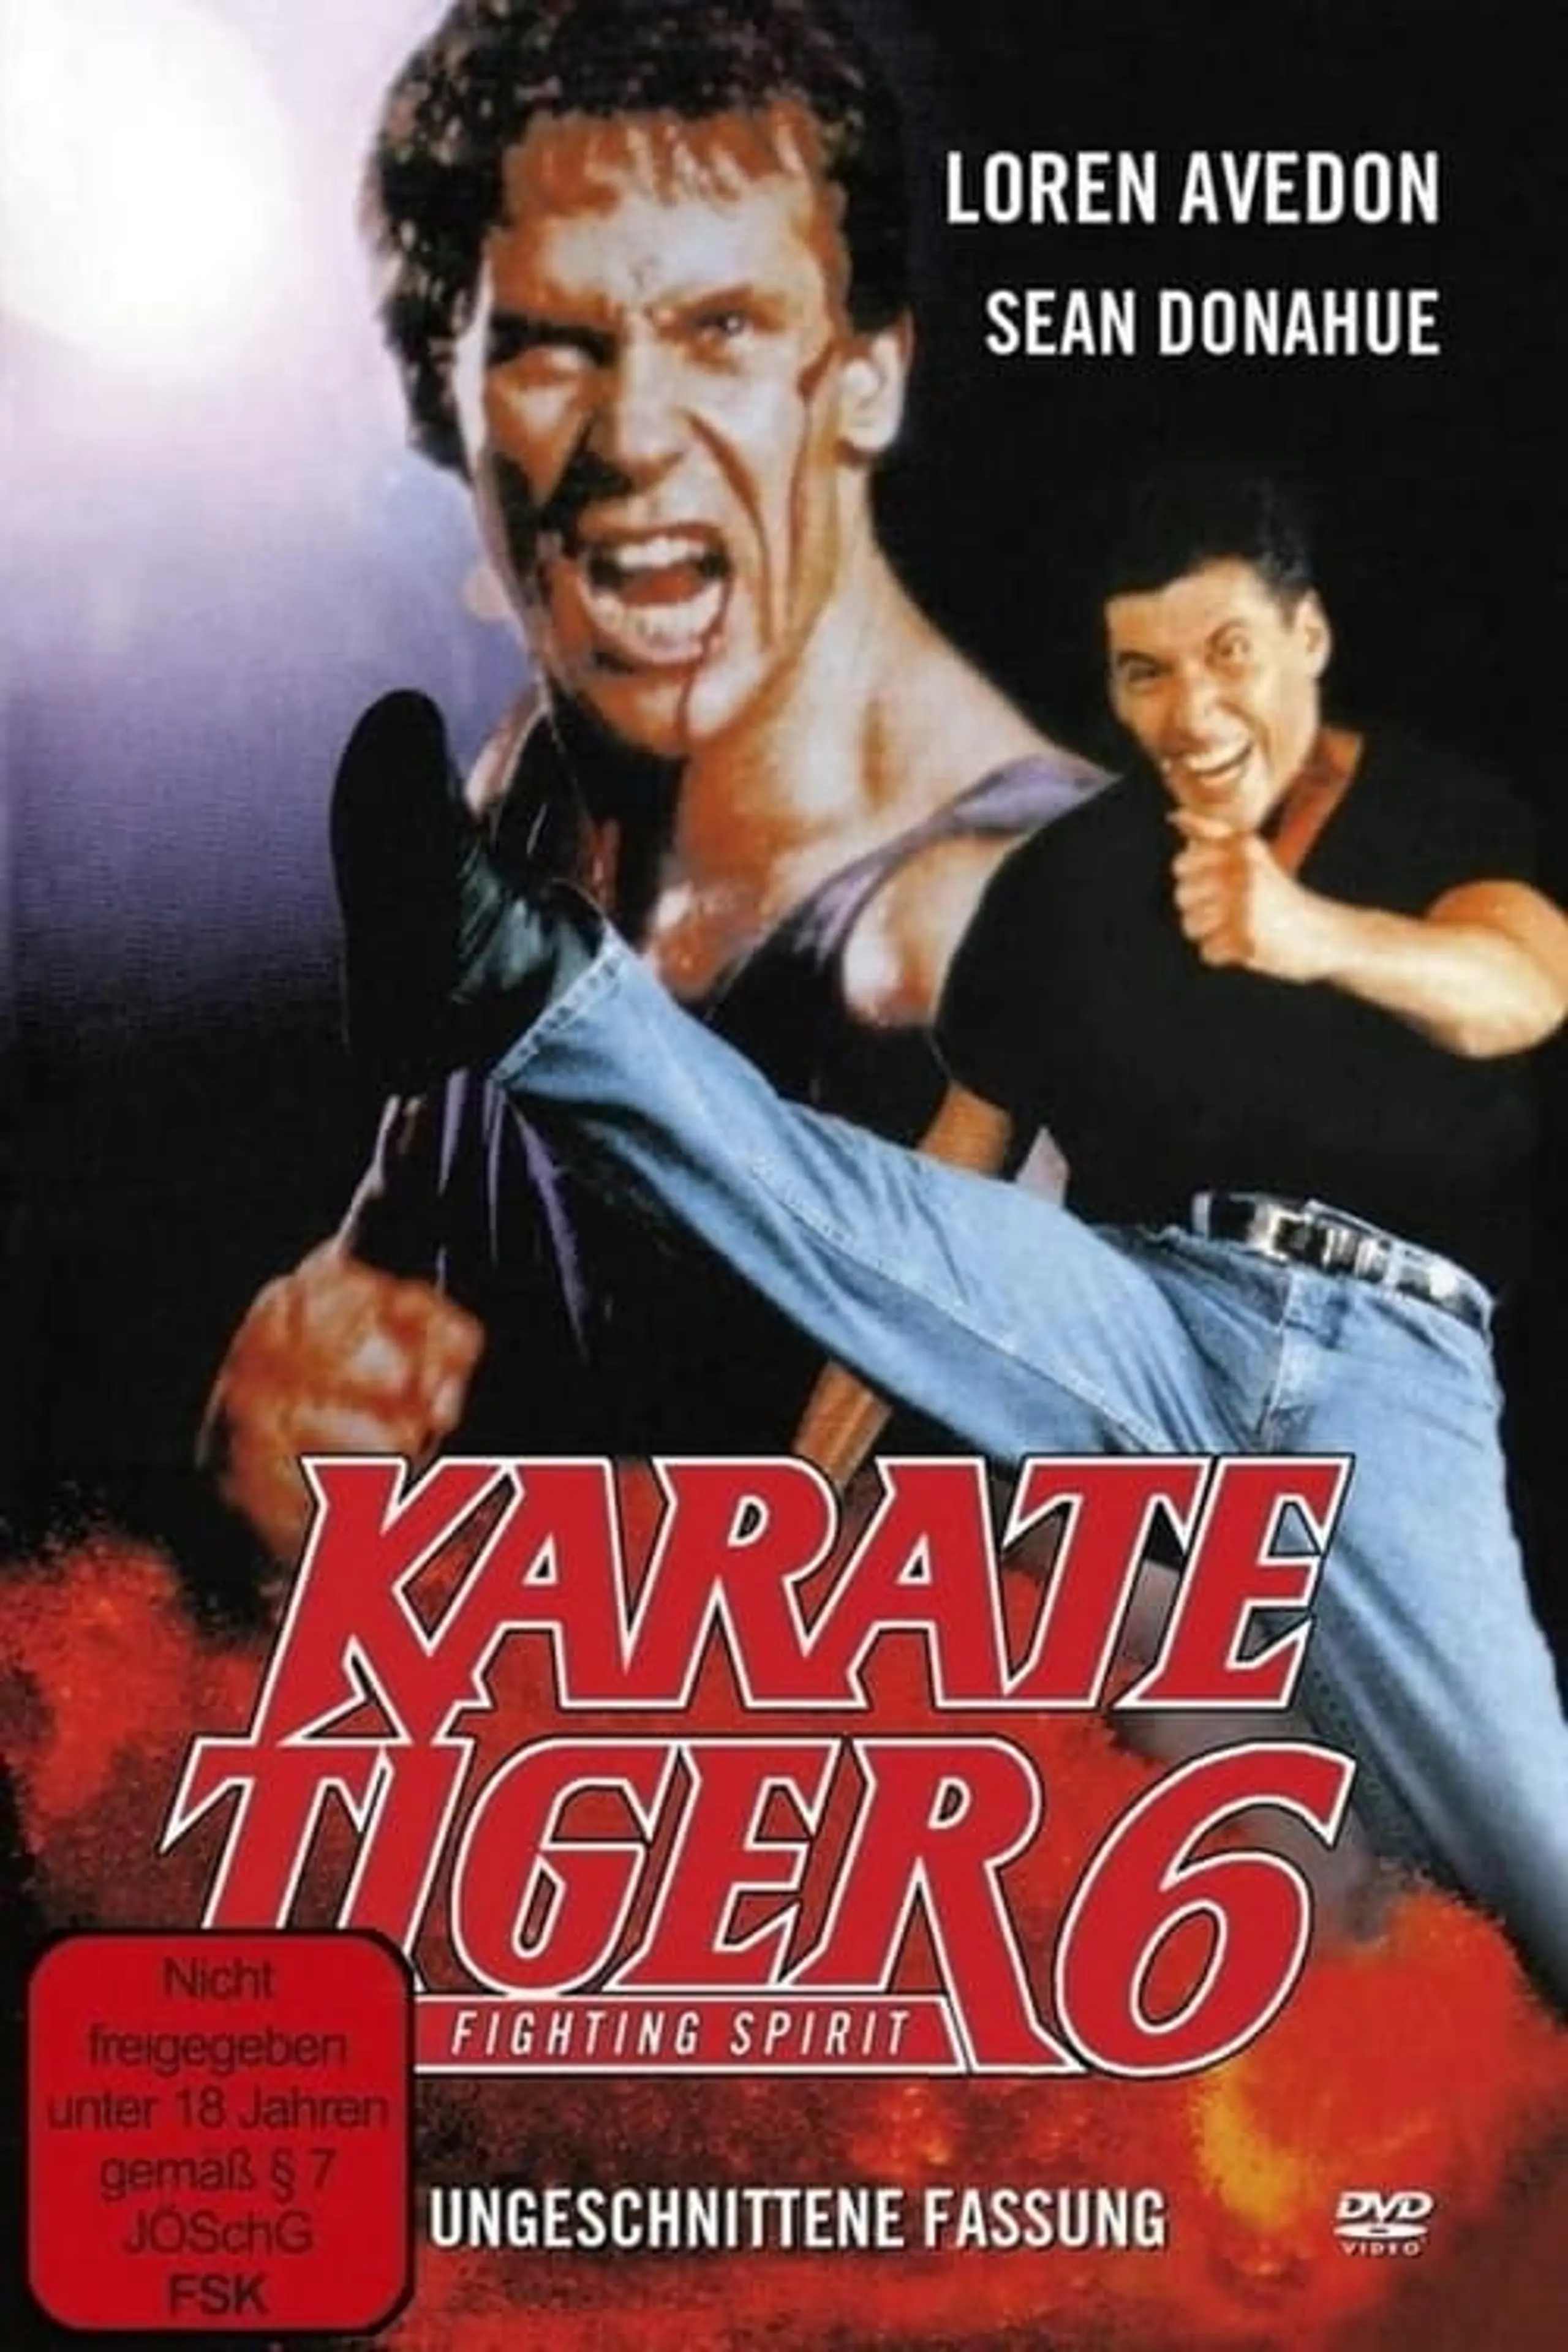 Karate Tiger 6 - Fighting Spirit